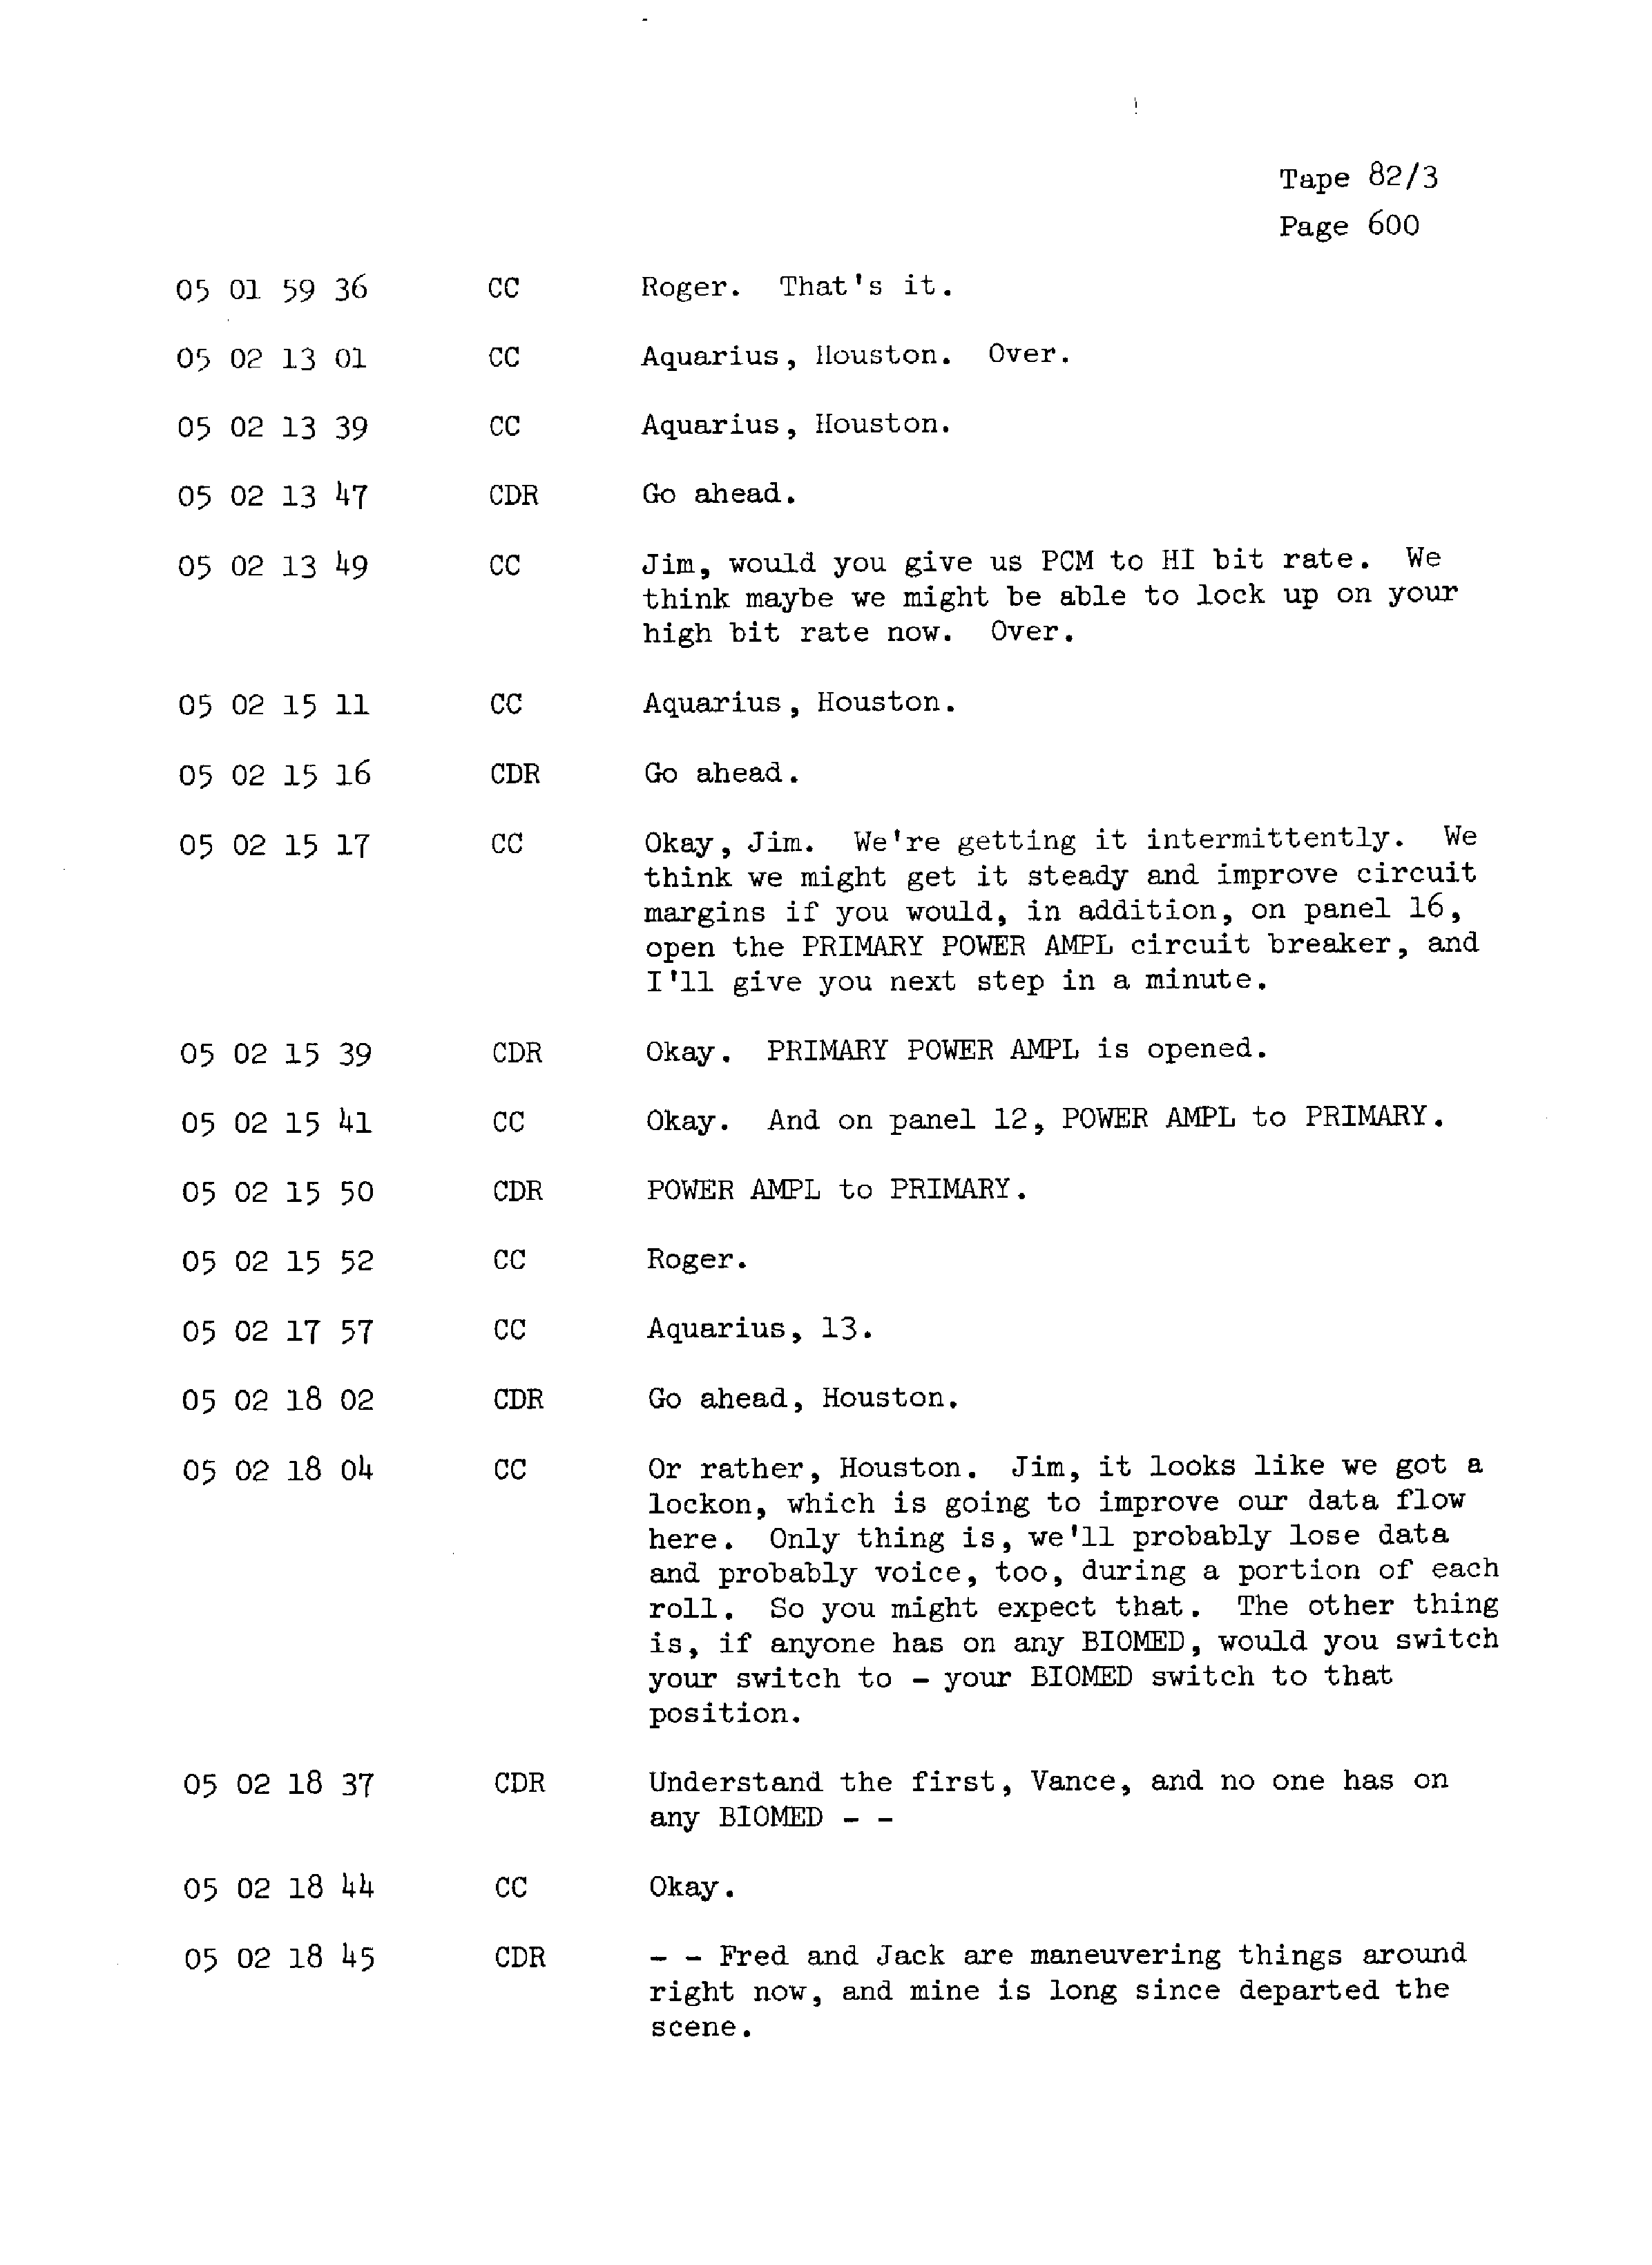 Page 607 of Apollo 13’s original transcript